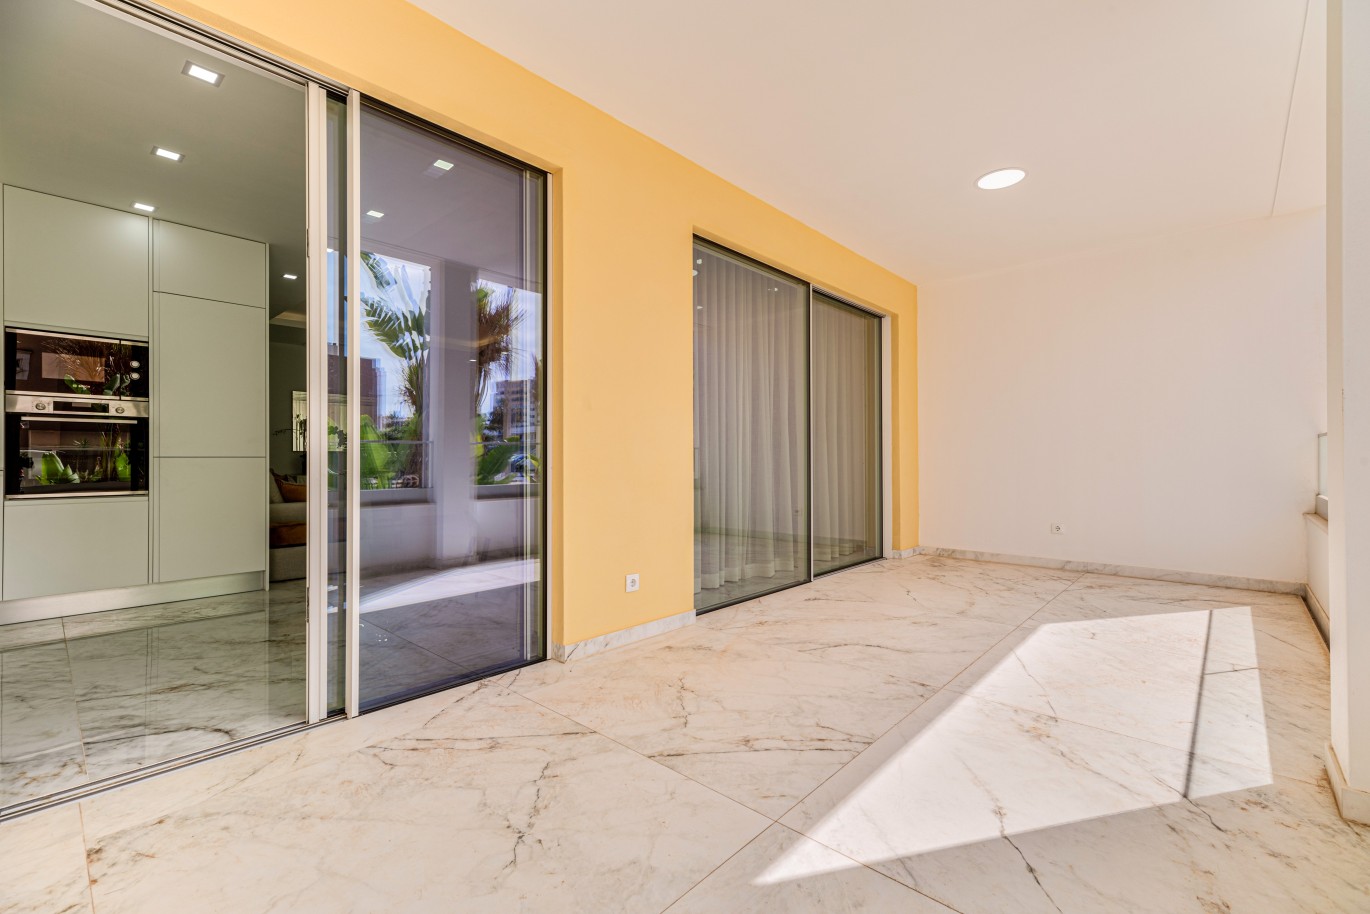 Apartamento, com terraço, para venda, em Lagos, Algarve_238175